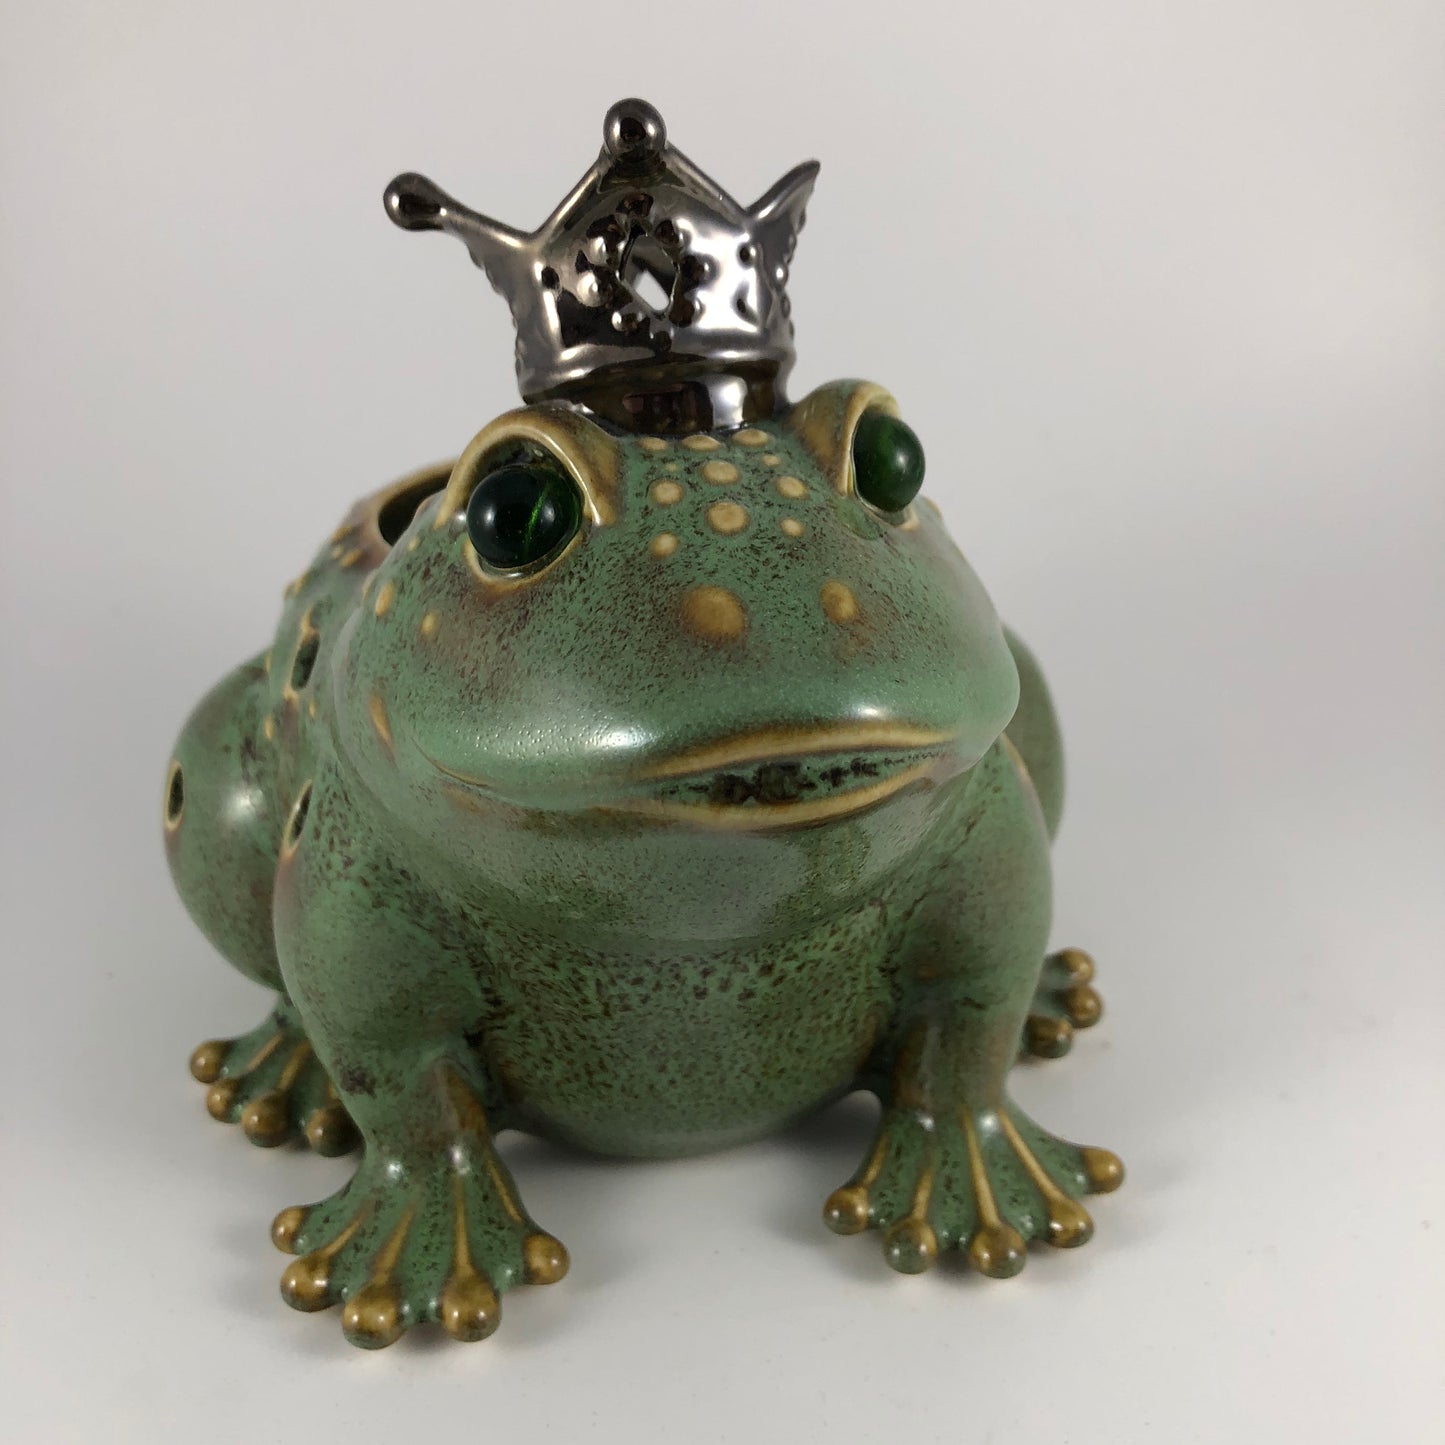 P9742 - The Frog Prince